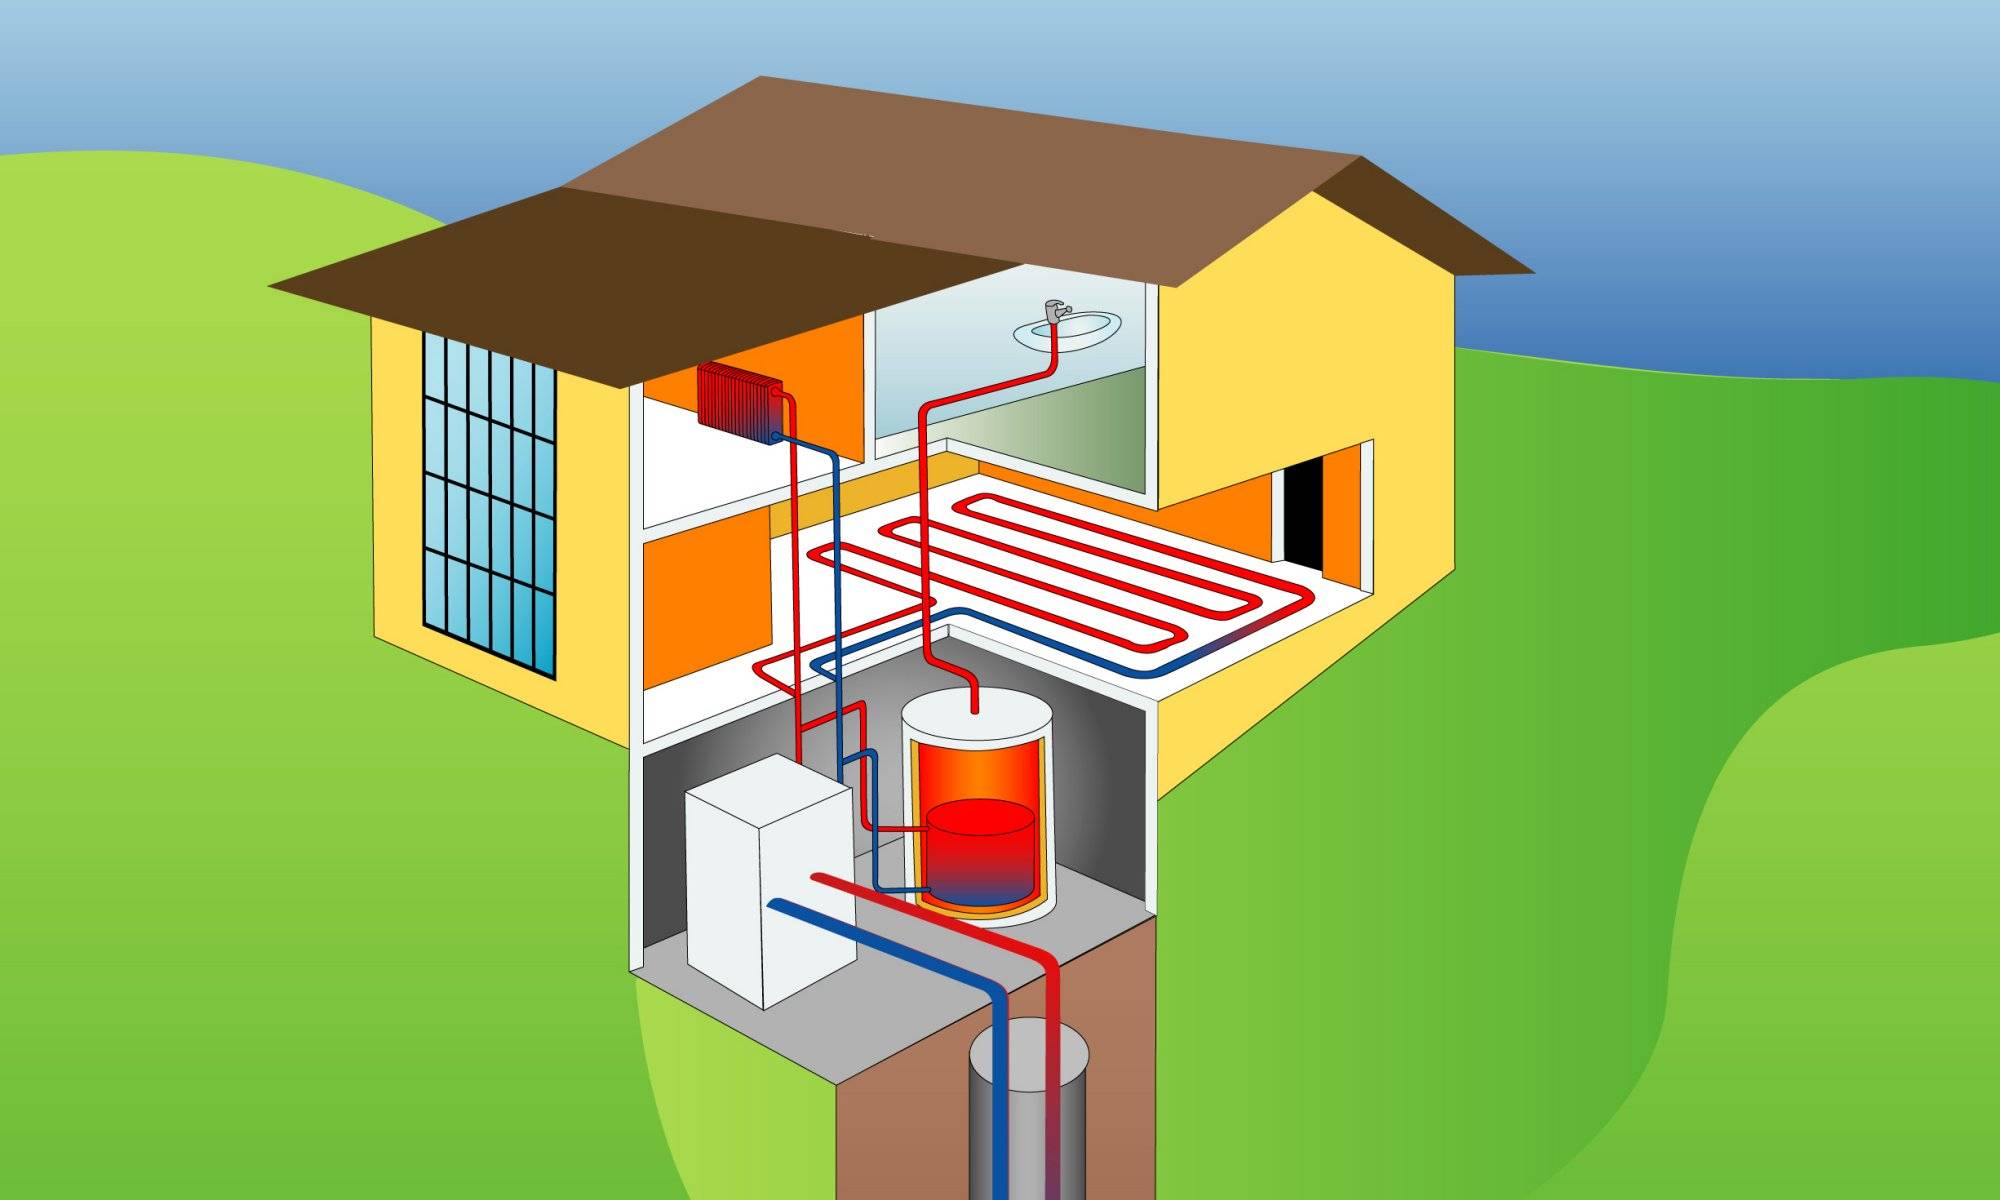 Геотермальное отопление дома своими руками: принцип работы, особенности монтажа и рекомендации :: syl.ru